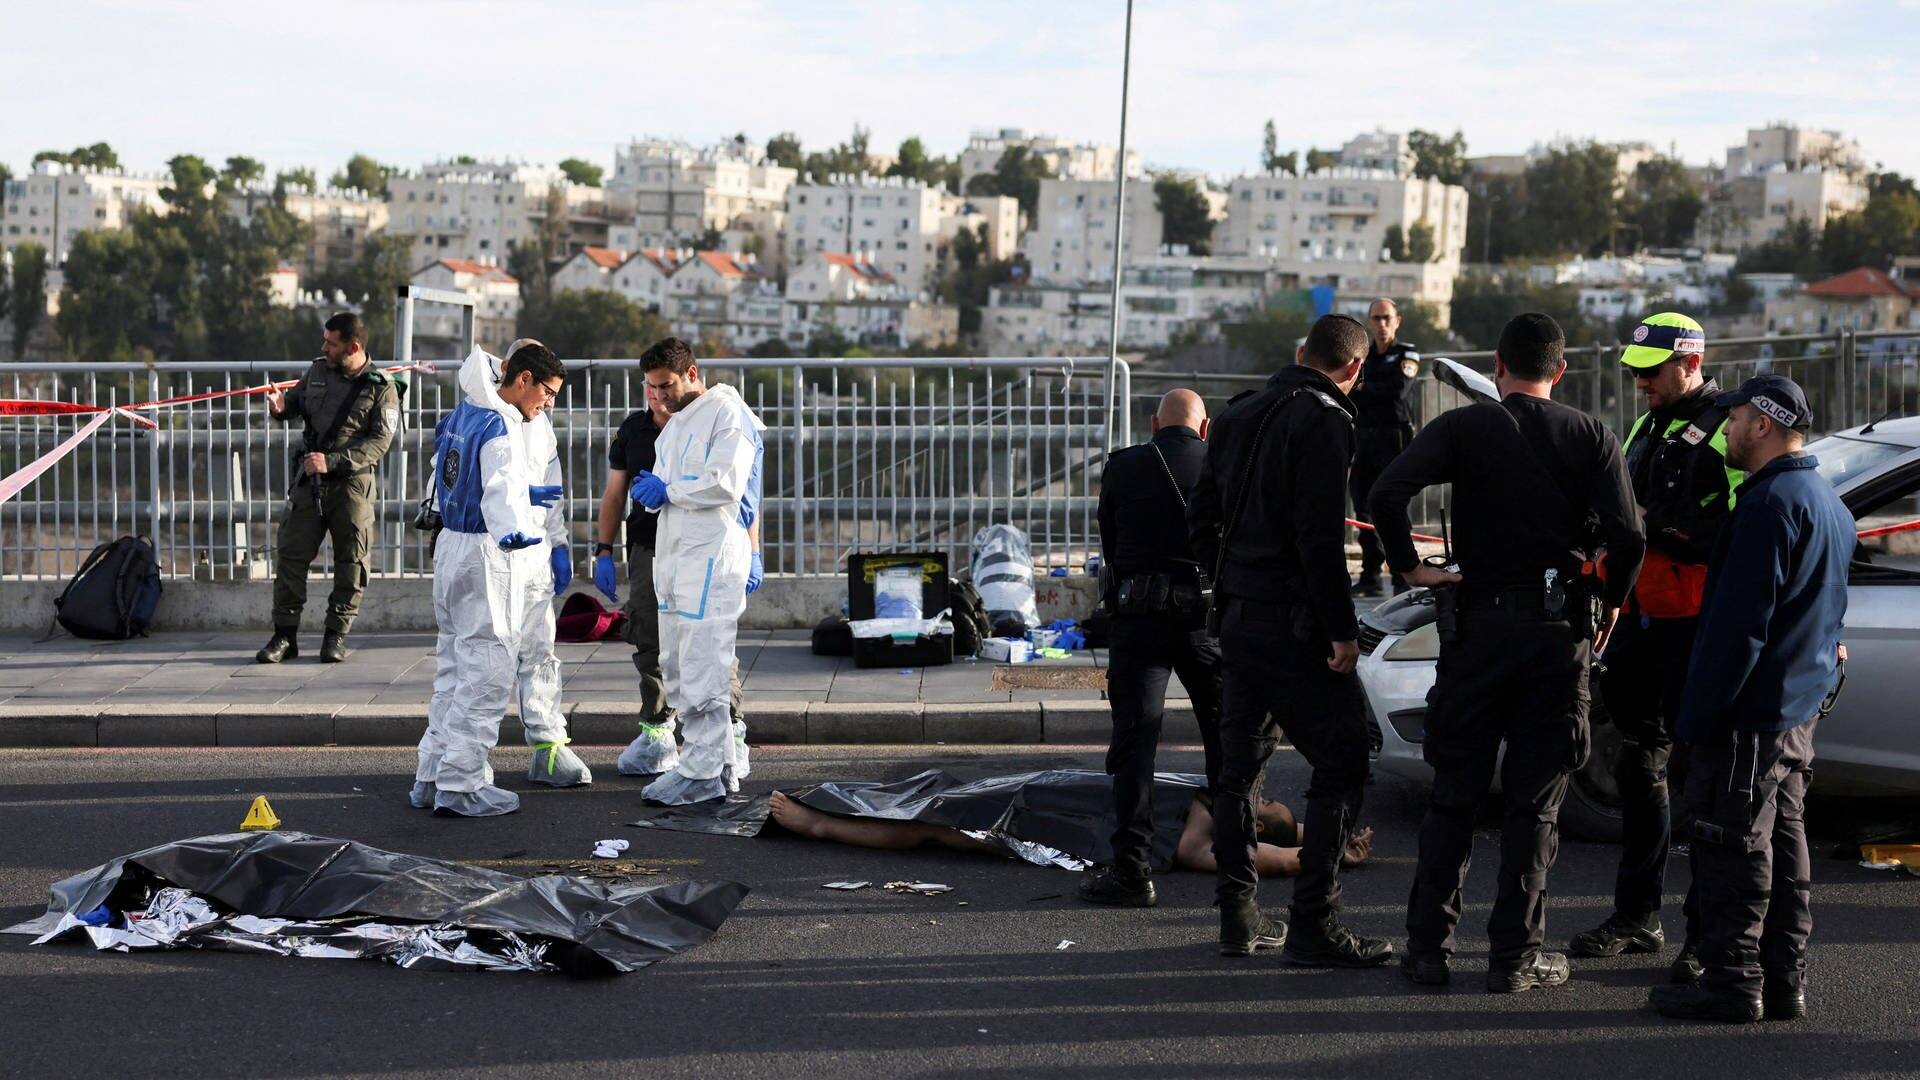 Leichensäcke liegen am Ort eines Anschlags in Jerusalem, Polizisten und Spurensicherer stehen dabei (Foto: Reuters, REUTERS/Ronen Zvulun)